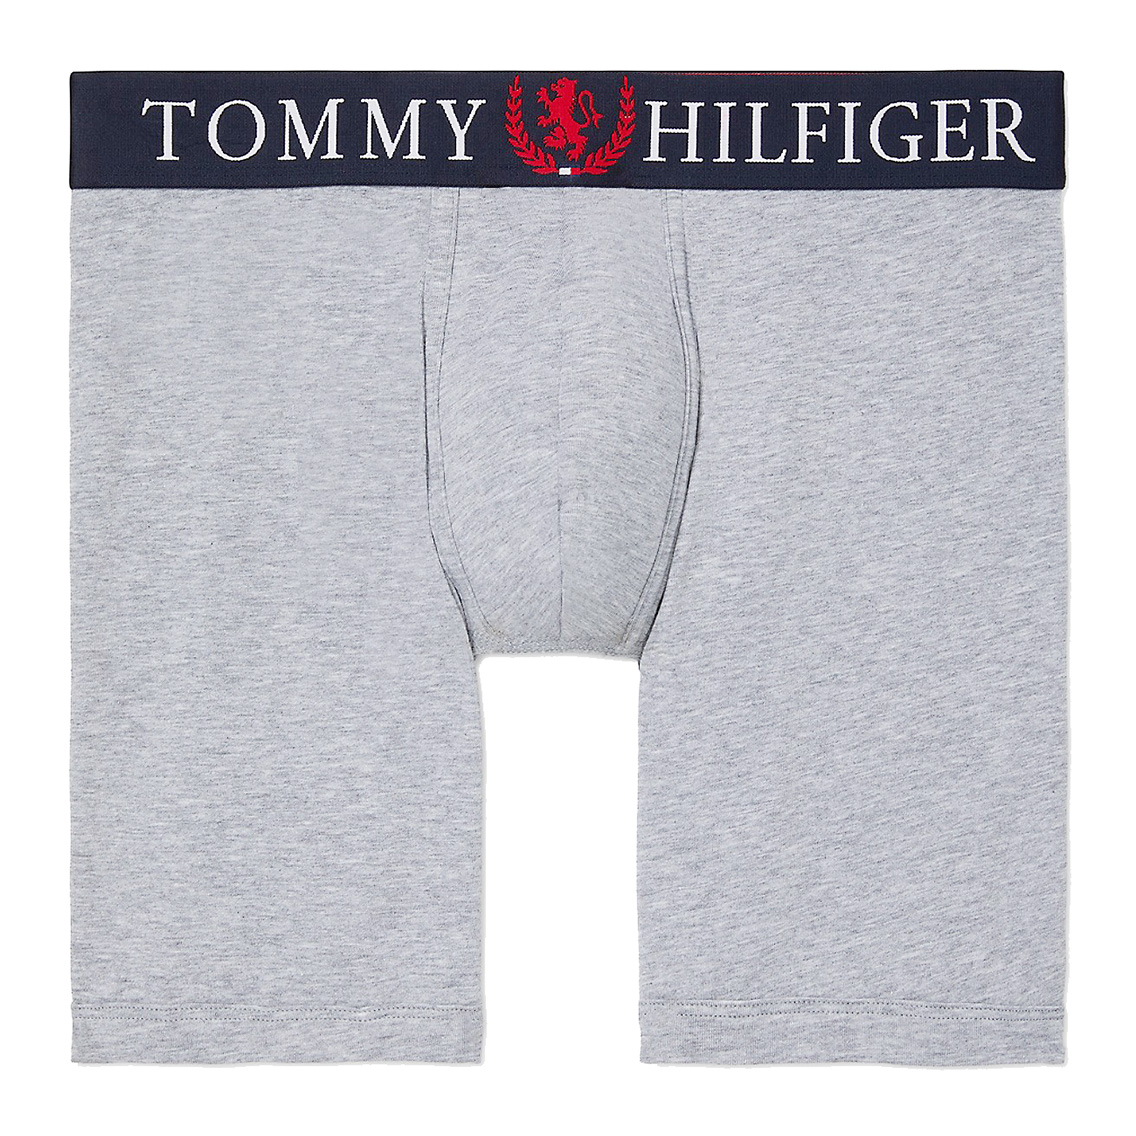 【ネコポス可:2点まで】[09T4067-004] TOMMY HILFIGER トミーヒルフィガー ボクサーパンツ メンズ アンダーウェア インナー 男性 下着 ブ